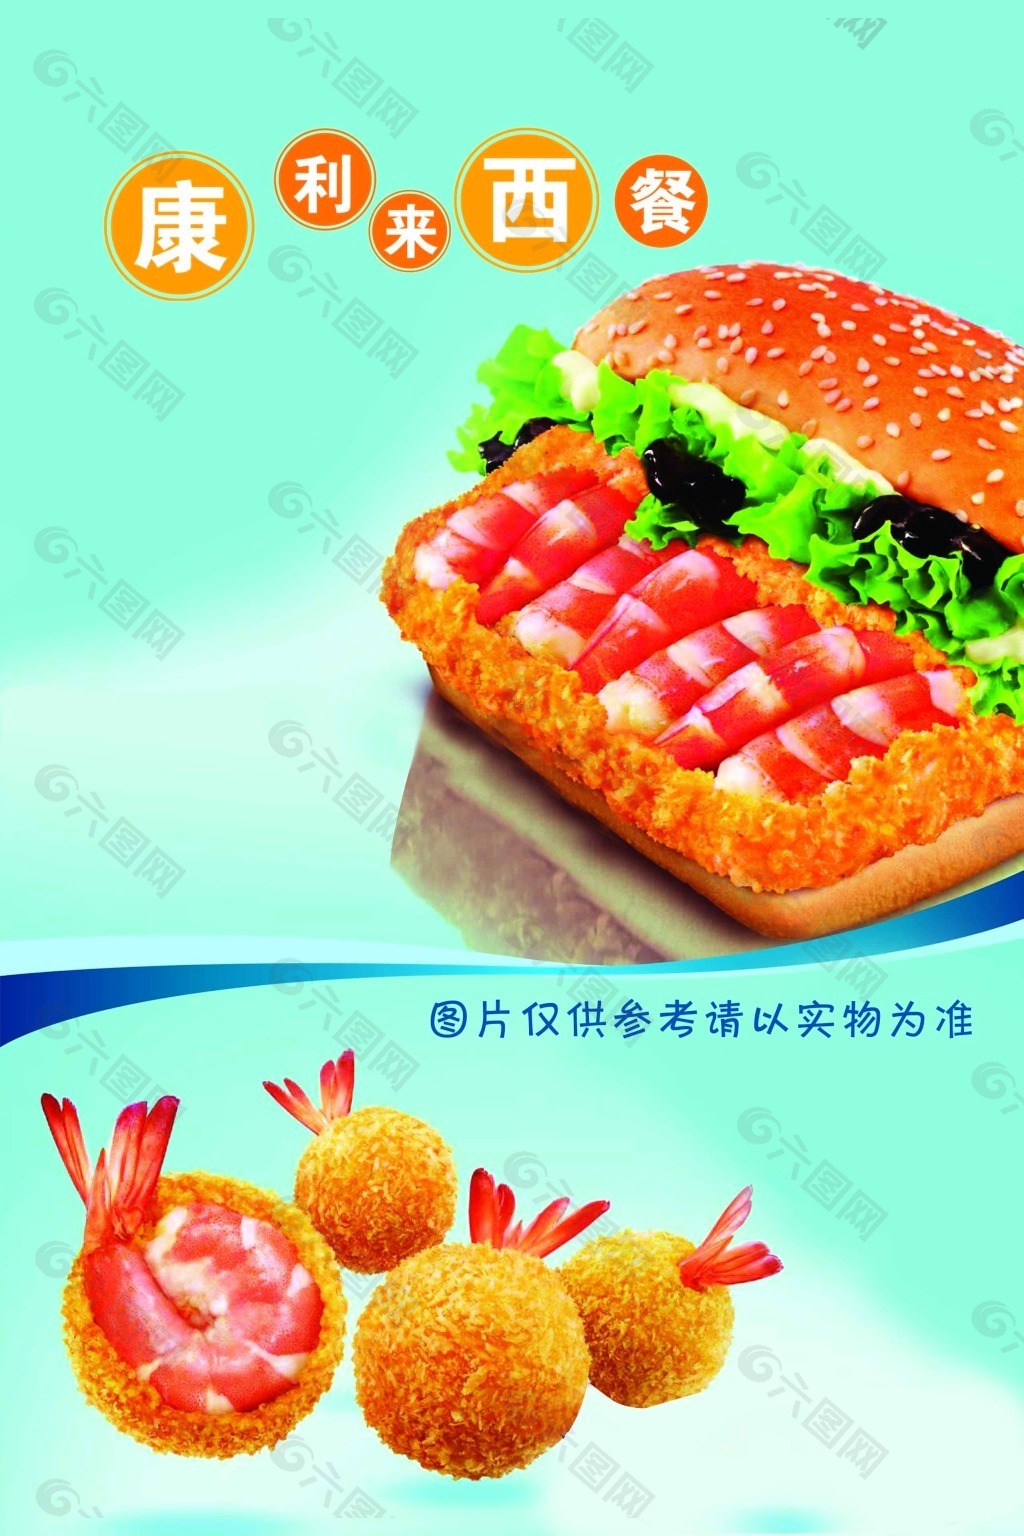 虾肉汉堡